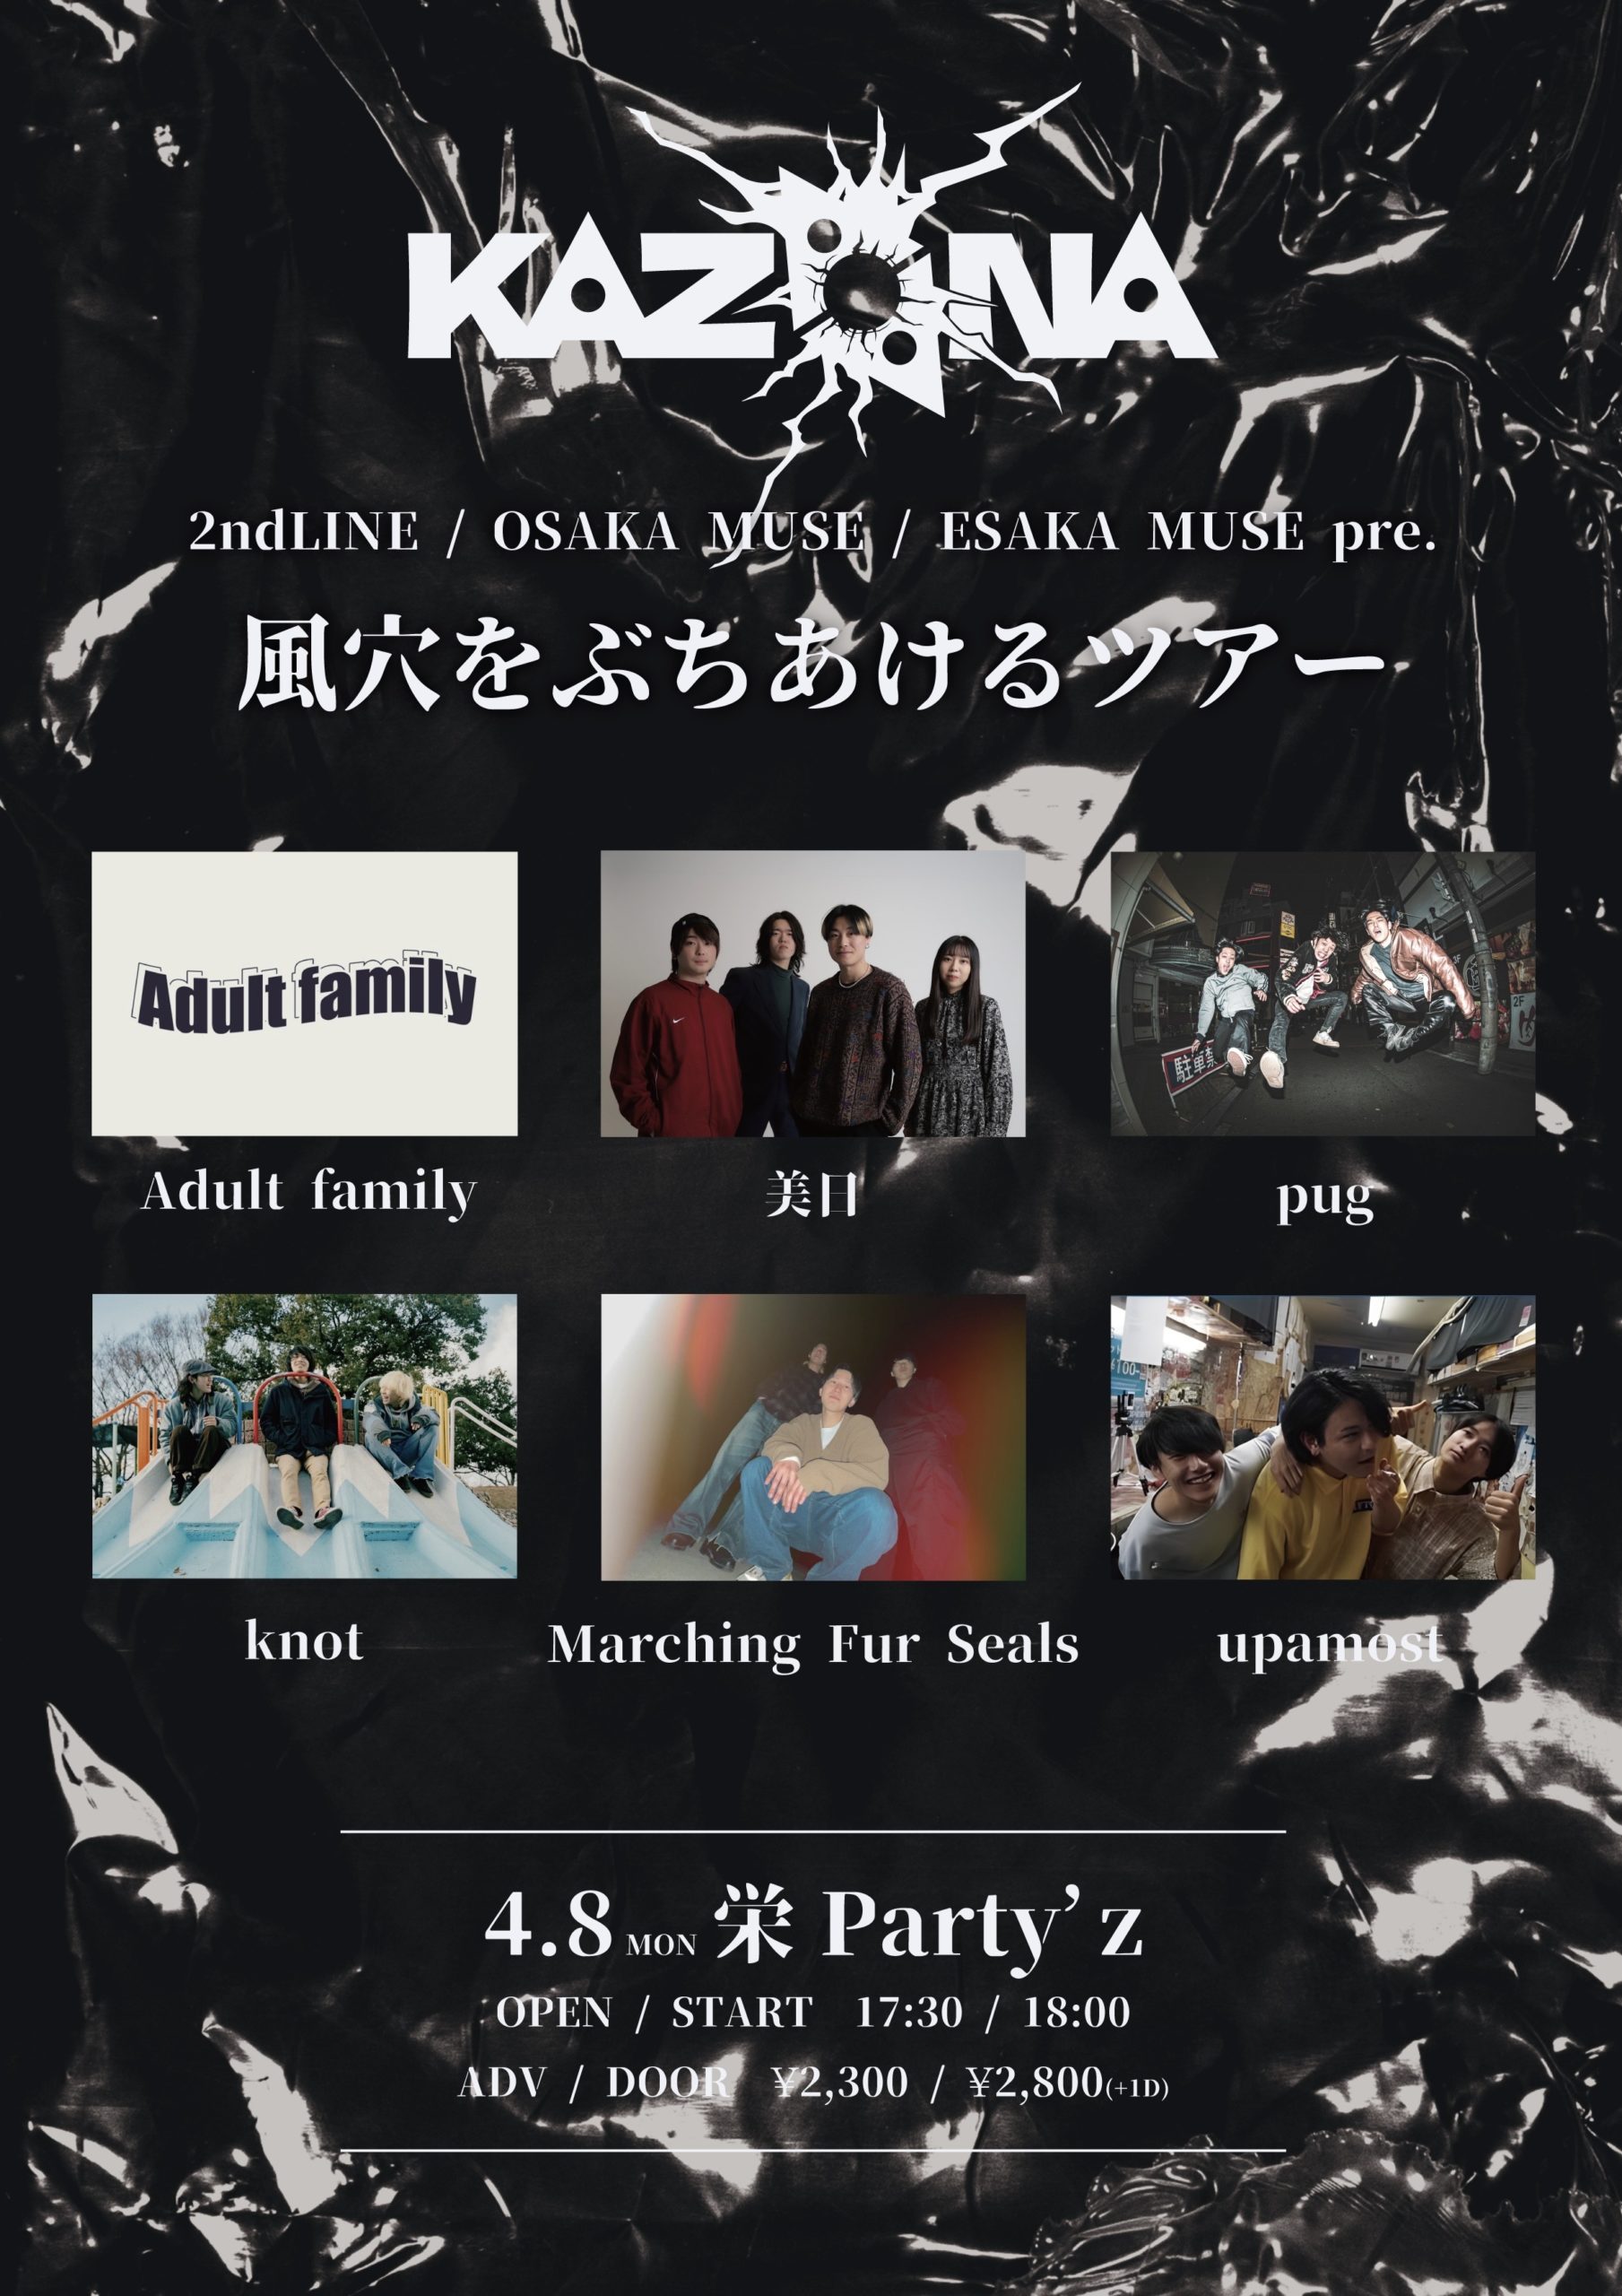 コンピレーションアルバム 『KAZAANA' 24』Release Tour 風穴をぶちあけるツアー' 24